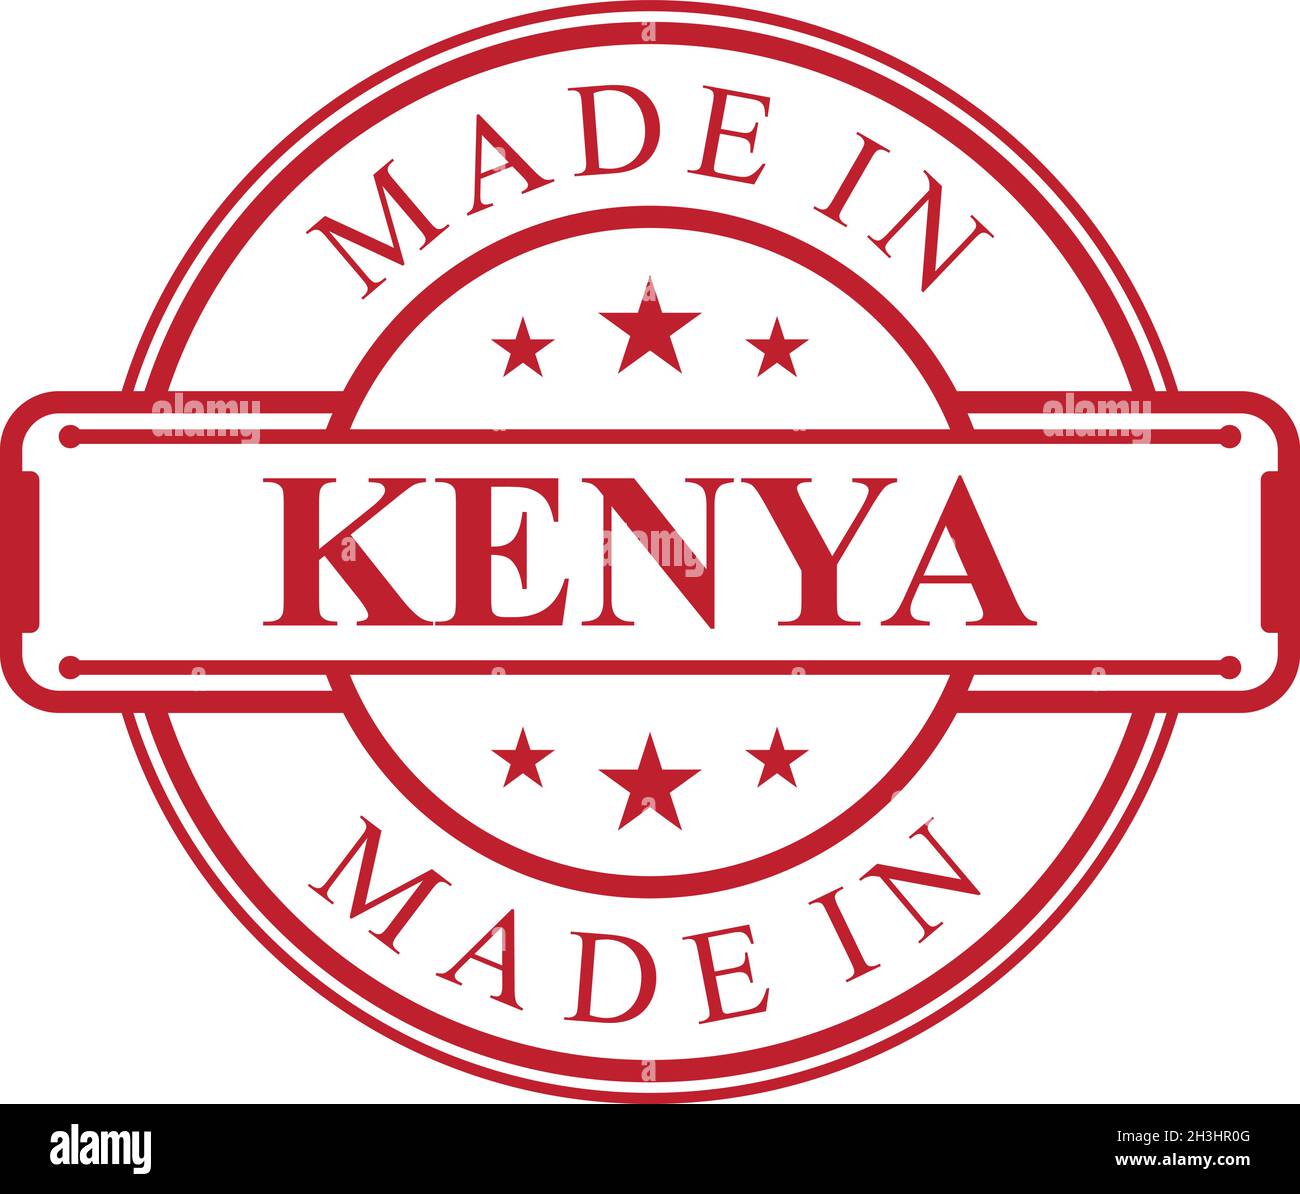 Icona Made in Kenya label con emblema di colore rosso su sfondo bianco. Elemento di design con logo di qualità vettoriale. Illustrazione vettoriale EPS.8 EPS.10 Illustrazione Vettoriale